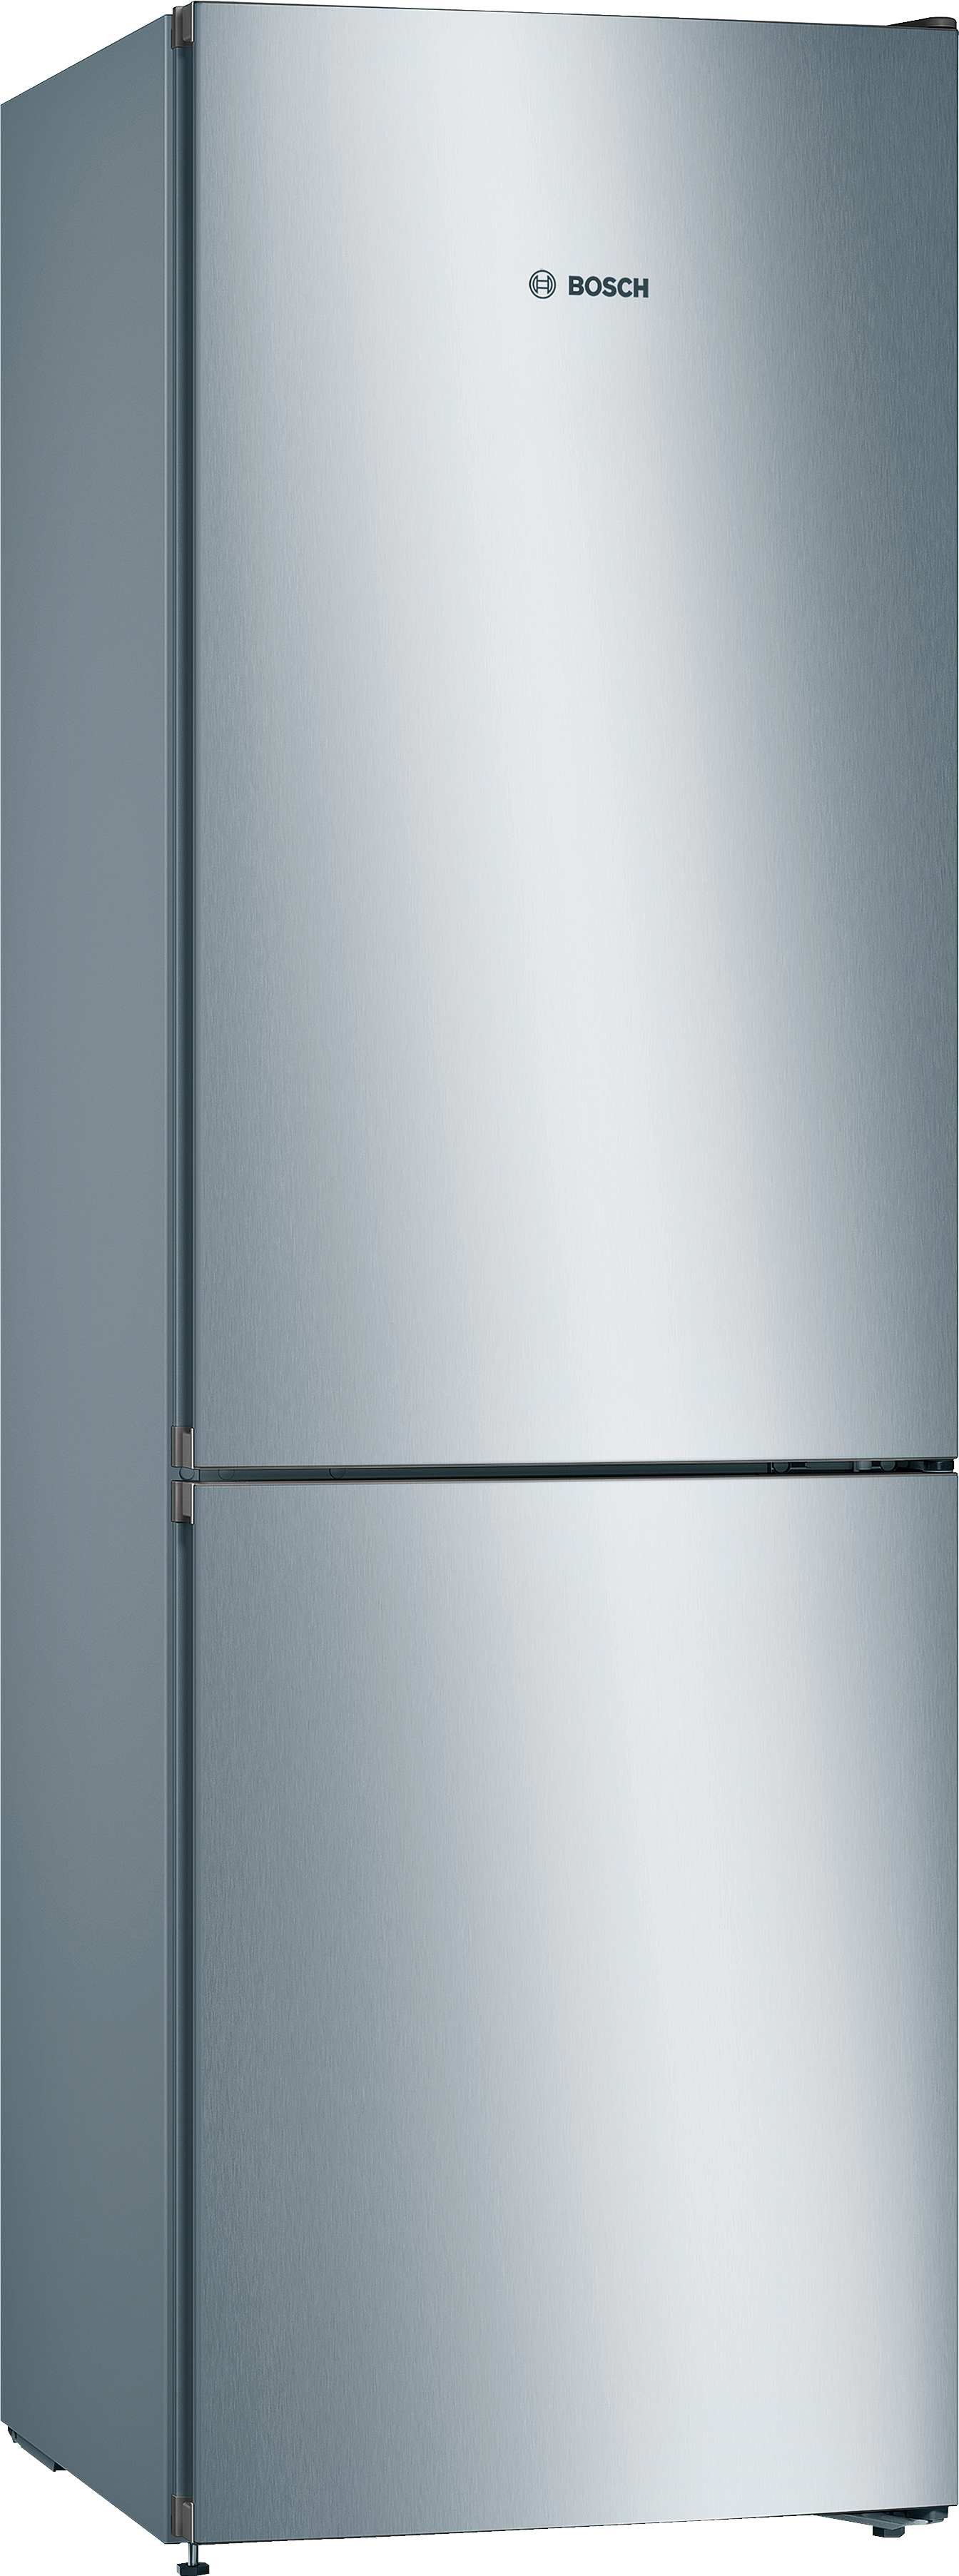 Холодильник Bosch KGN36VL326 в интернет-магазине, главное фото